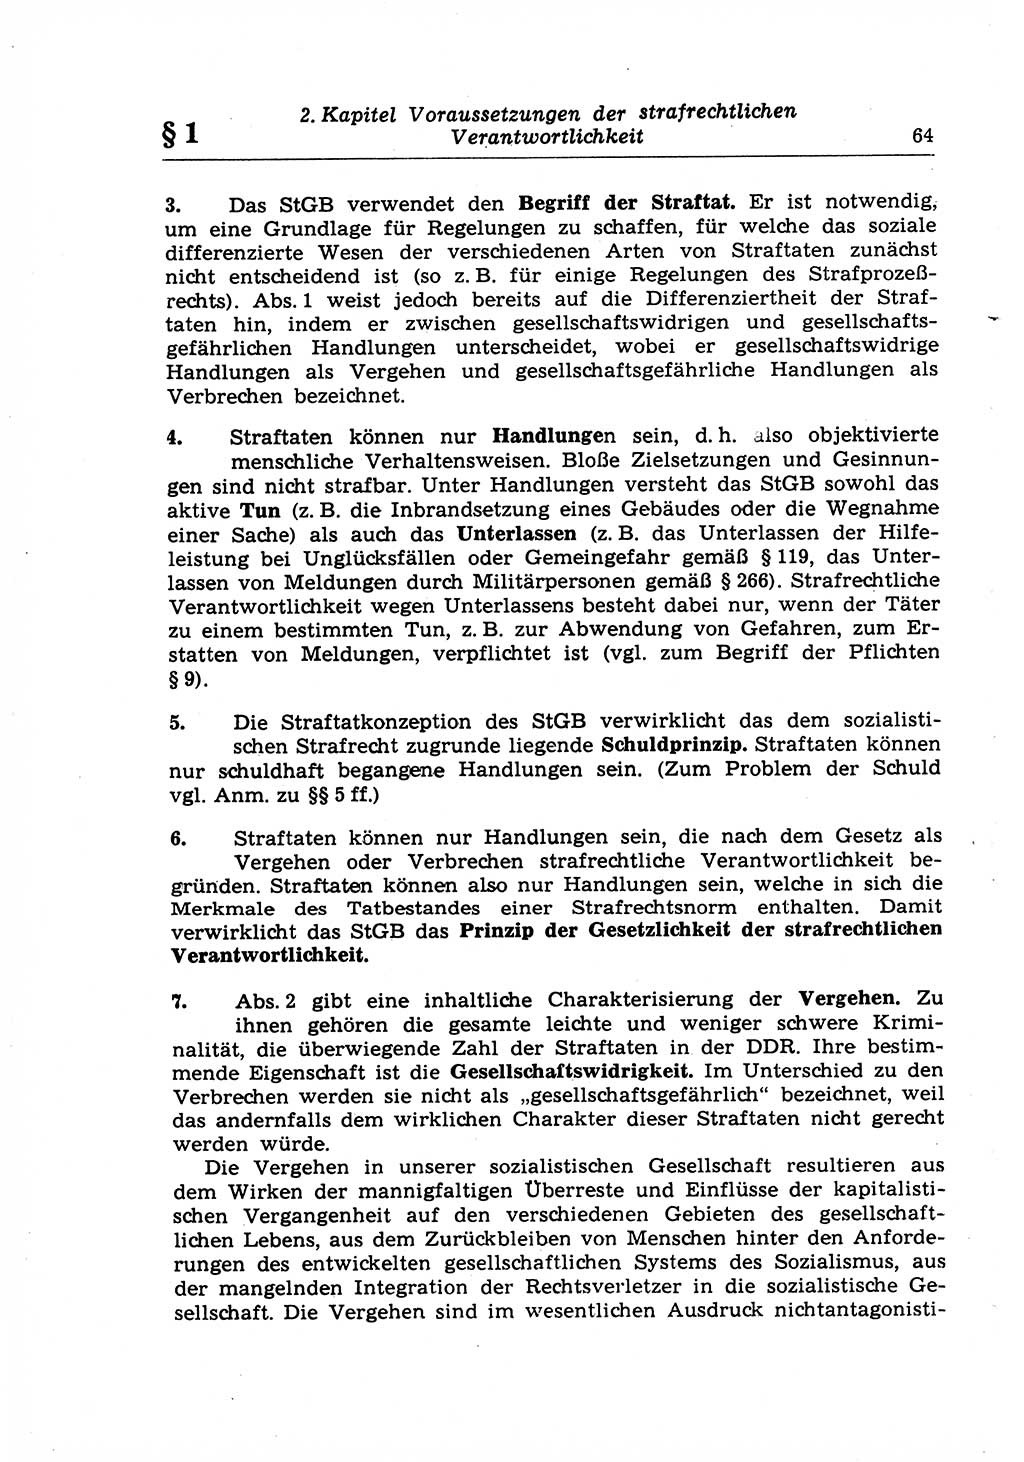 Strafrecht der Deutschen Demokratischen Republik (DDR), Lehrkommentar zum Strafgesetzbuch (StGB), Allgemeiner Teil 1969, Seite 64 (Strafr. DDR Lehrkomm. StGB AT 1969, S. 64)